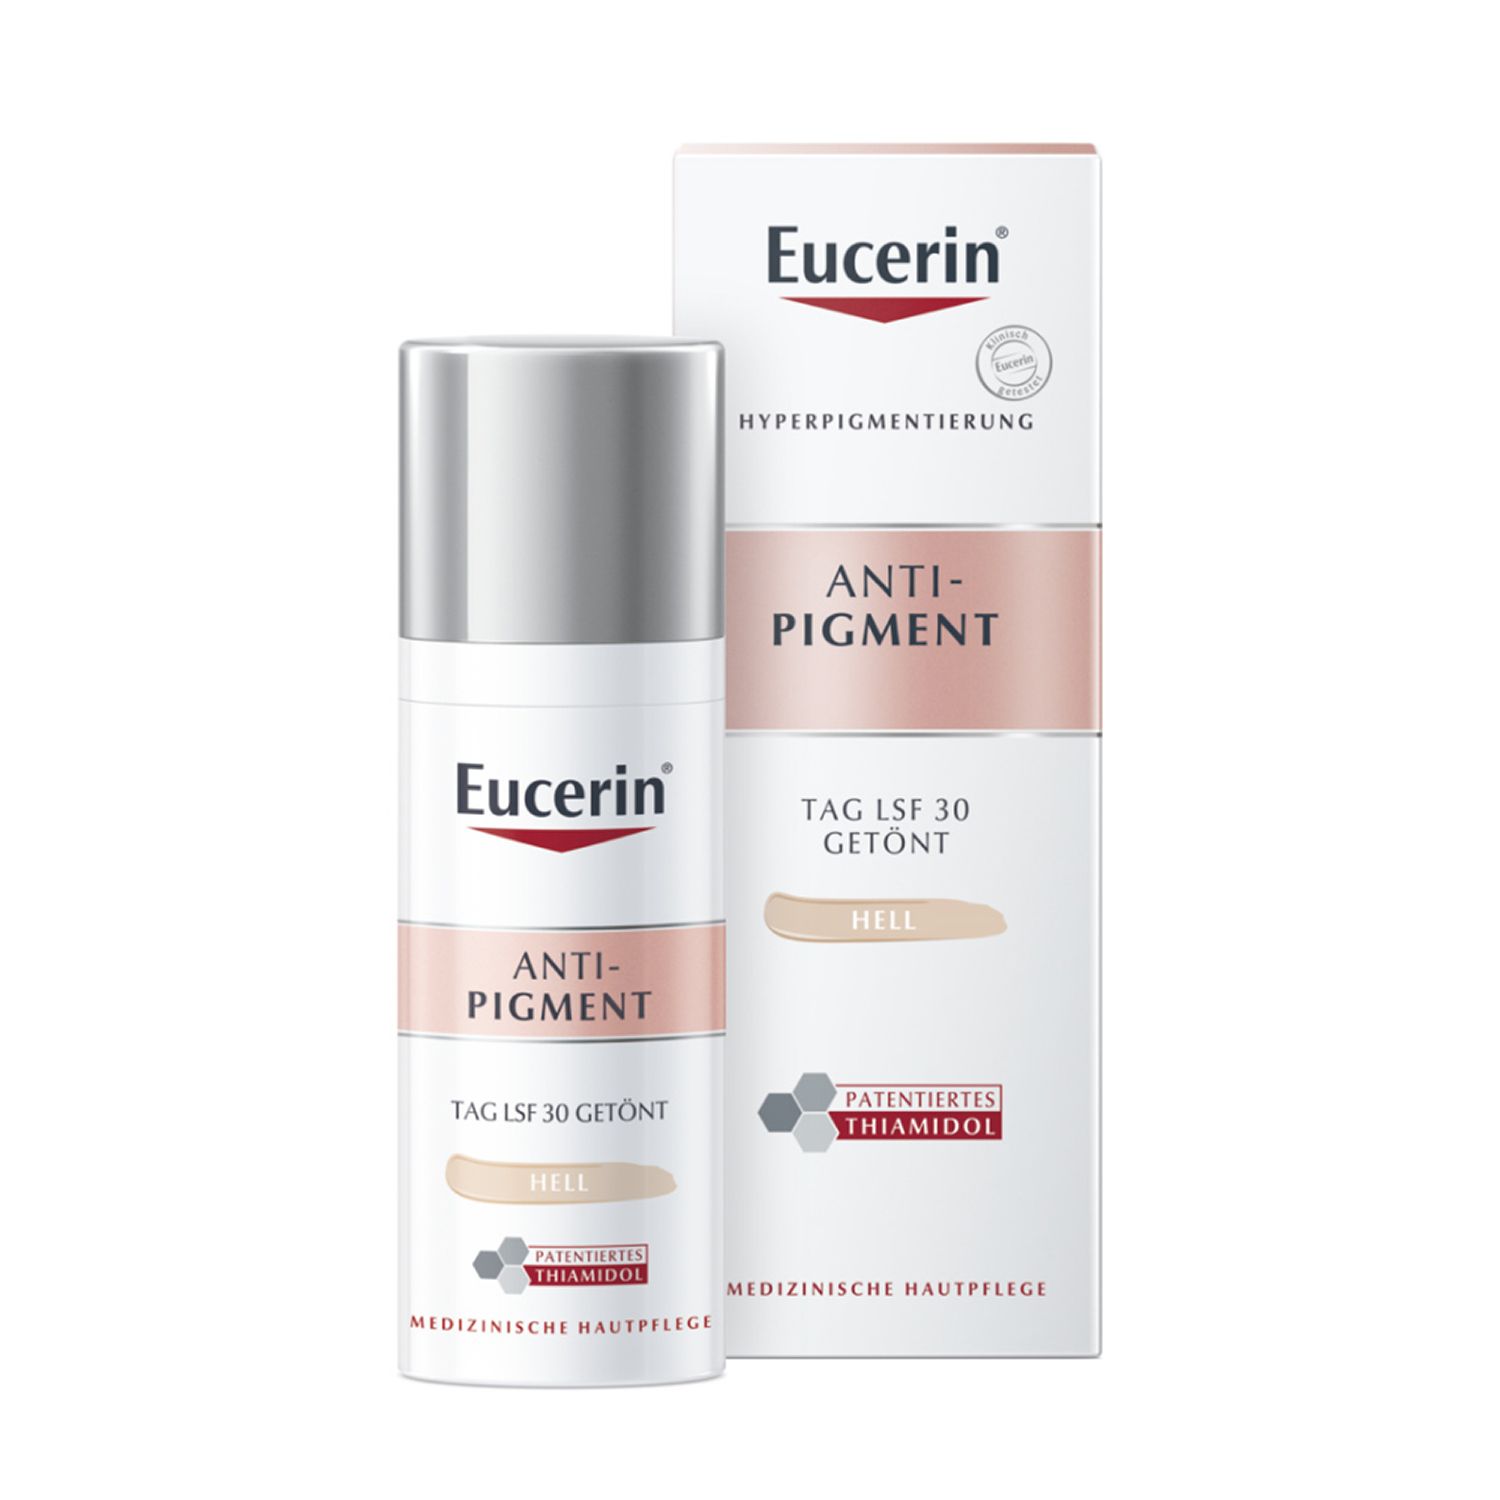 Eucerin® Anti-Pigment Tagescreme mit Thiamidol®, schnell einziehende, getönte Antipigmentcreme mit LSF 30, hell + Zusatzbeigabe: Eucerin DermatoCLEAN Mizellen-Reinigungsfluid 100ml